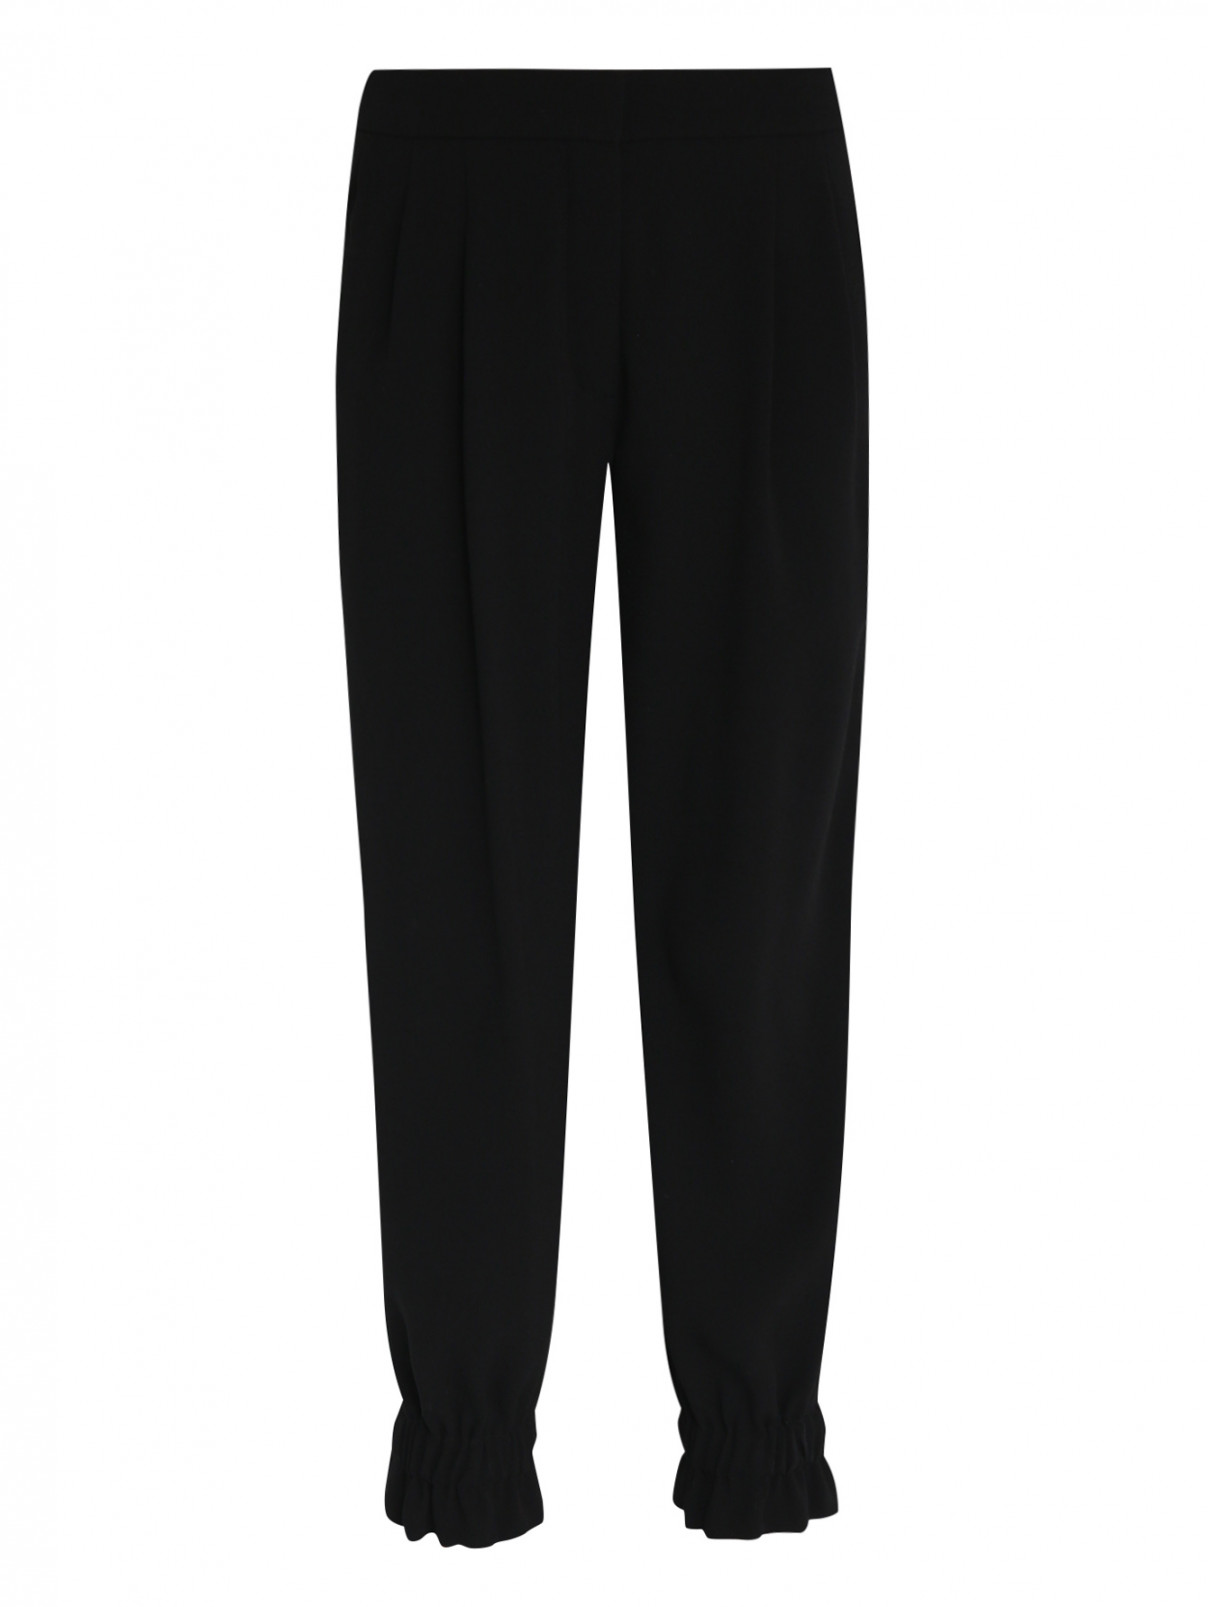 Укороченные брюки со складками Sonia Rykiel  –  Общий вид  – Цвет:  Черный